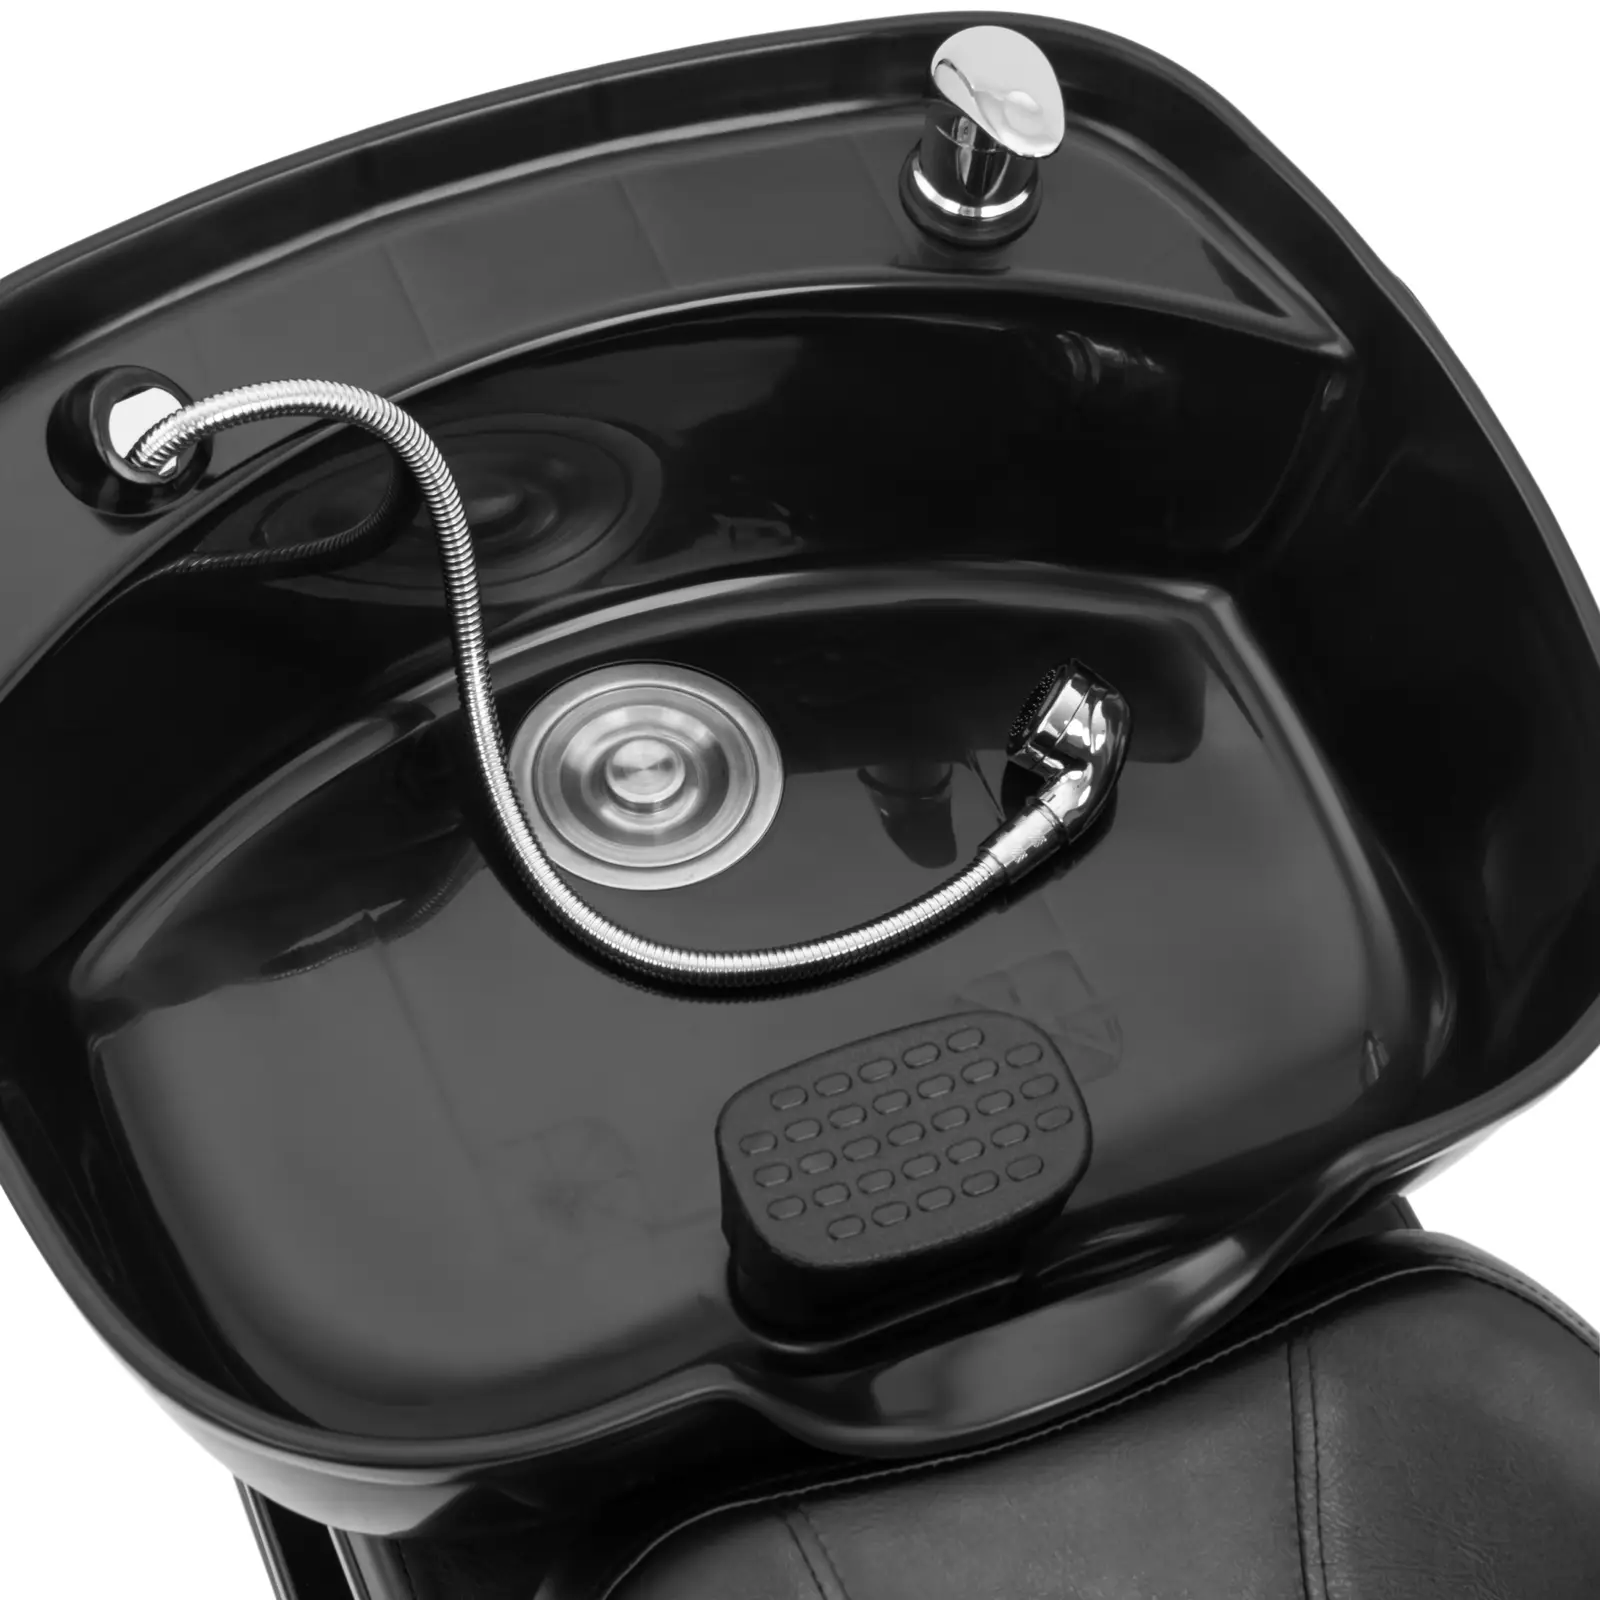 Friseur-Waschbecken mit Sessel - Maße Becken 600 x 450 x 150 mm - Schwarz